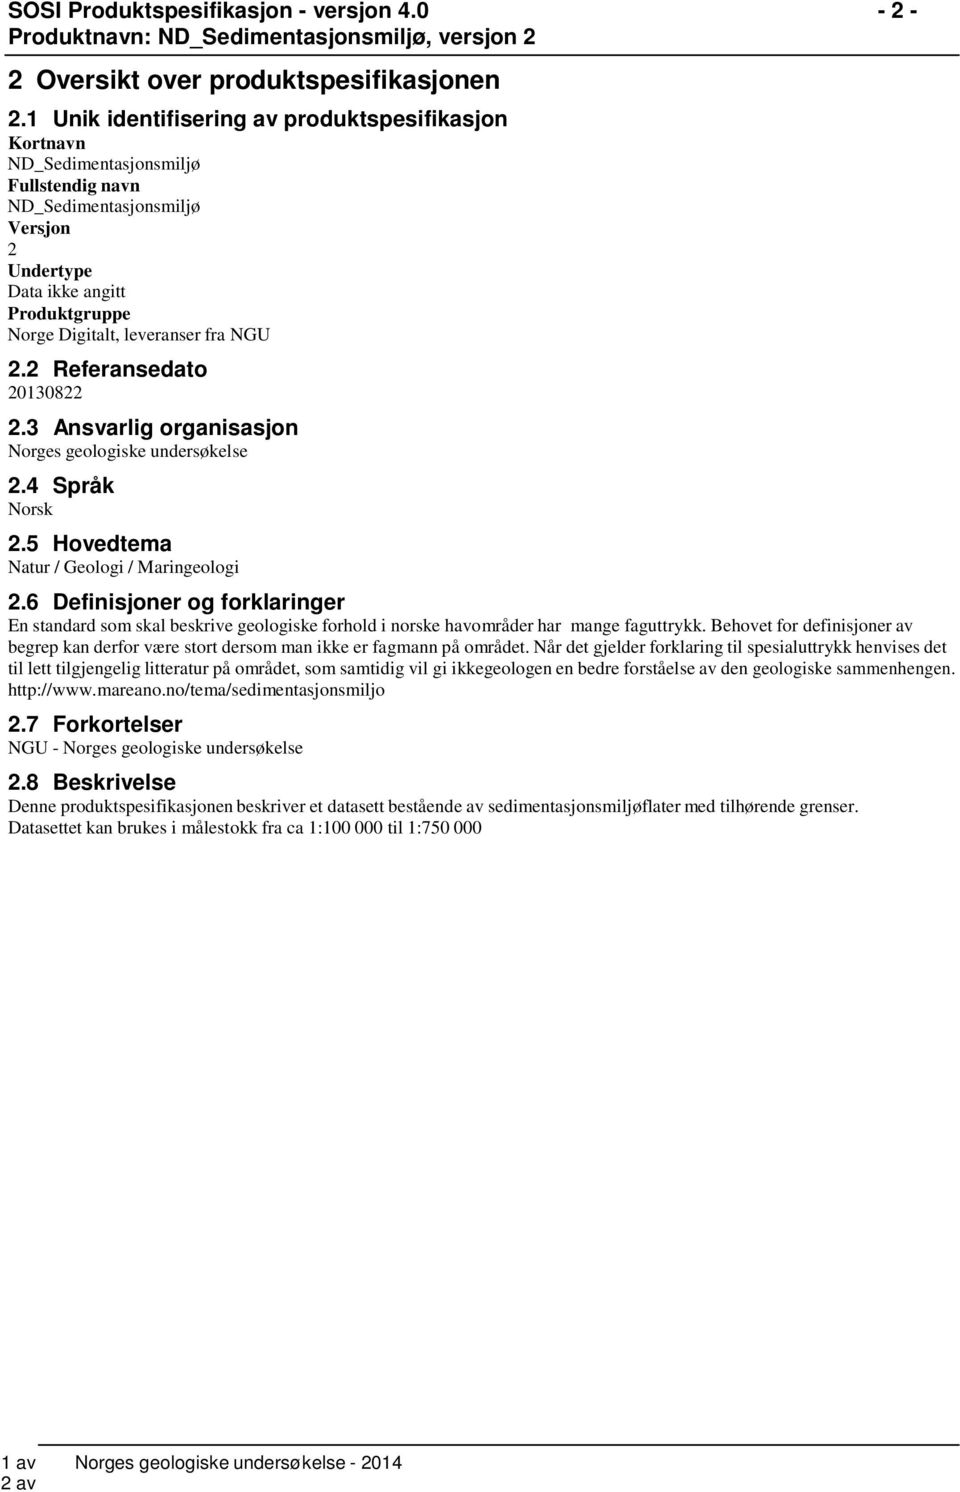 2 Referansedato 20130822 2.3 Ansvarlig organisasjon Norges geologiske undersøkelse 2.4 Språk Norsk 2.5 Hovedtema Natur / Geologi / Maringeologi 2.